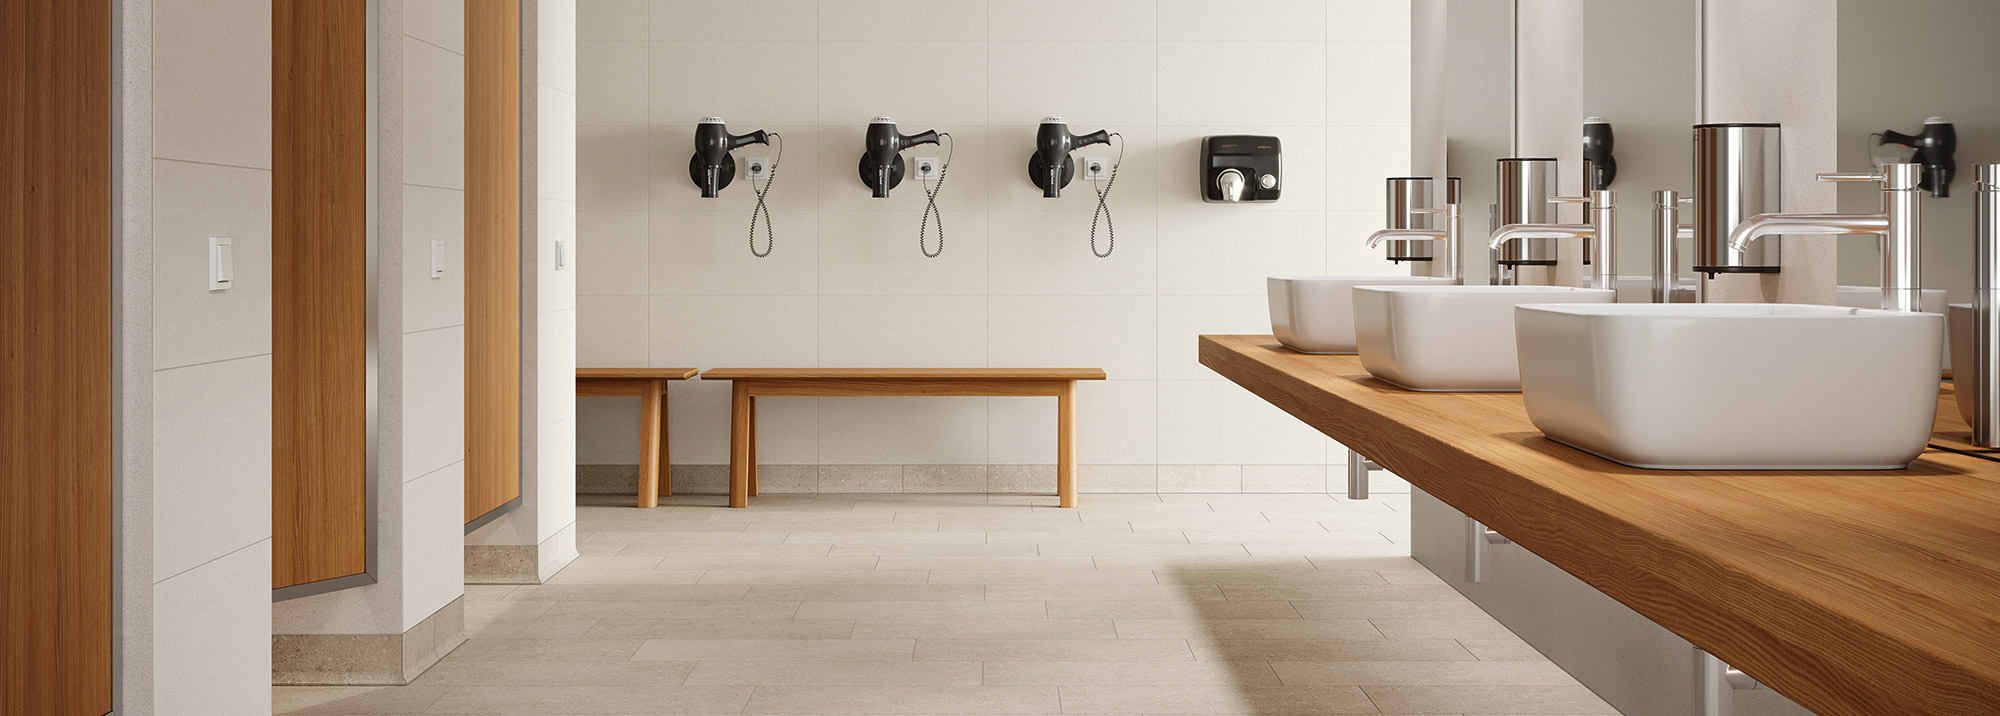 Wand und Bodenfliesen für Bäder und Waschräume mit passenden Accessoires von Fliesen-Moos in Velbert